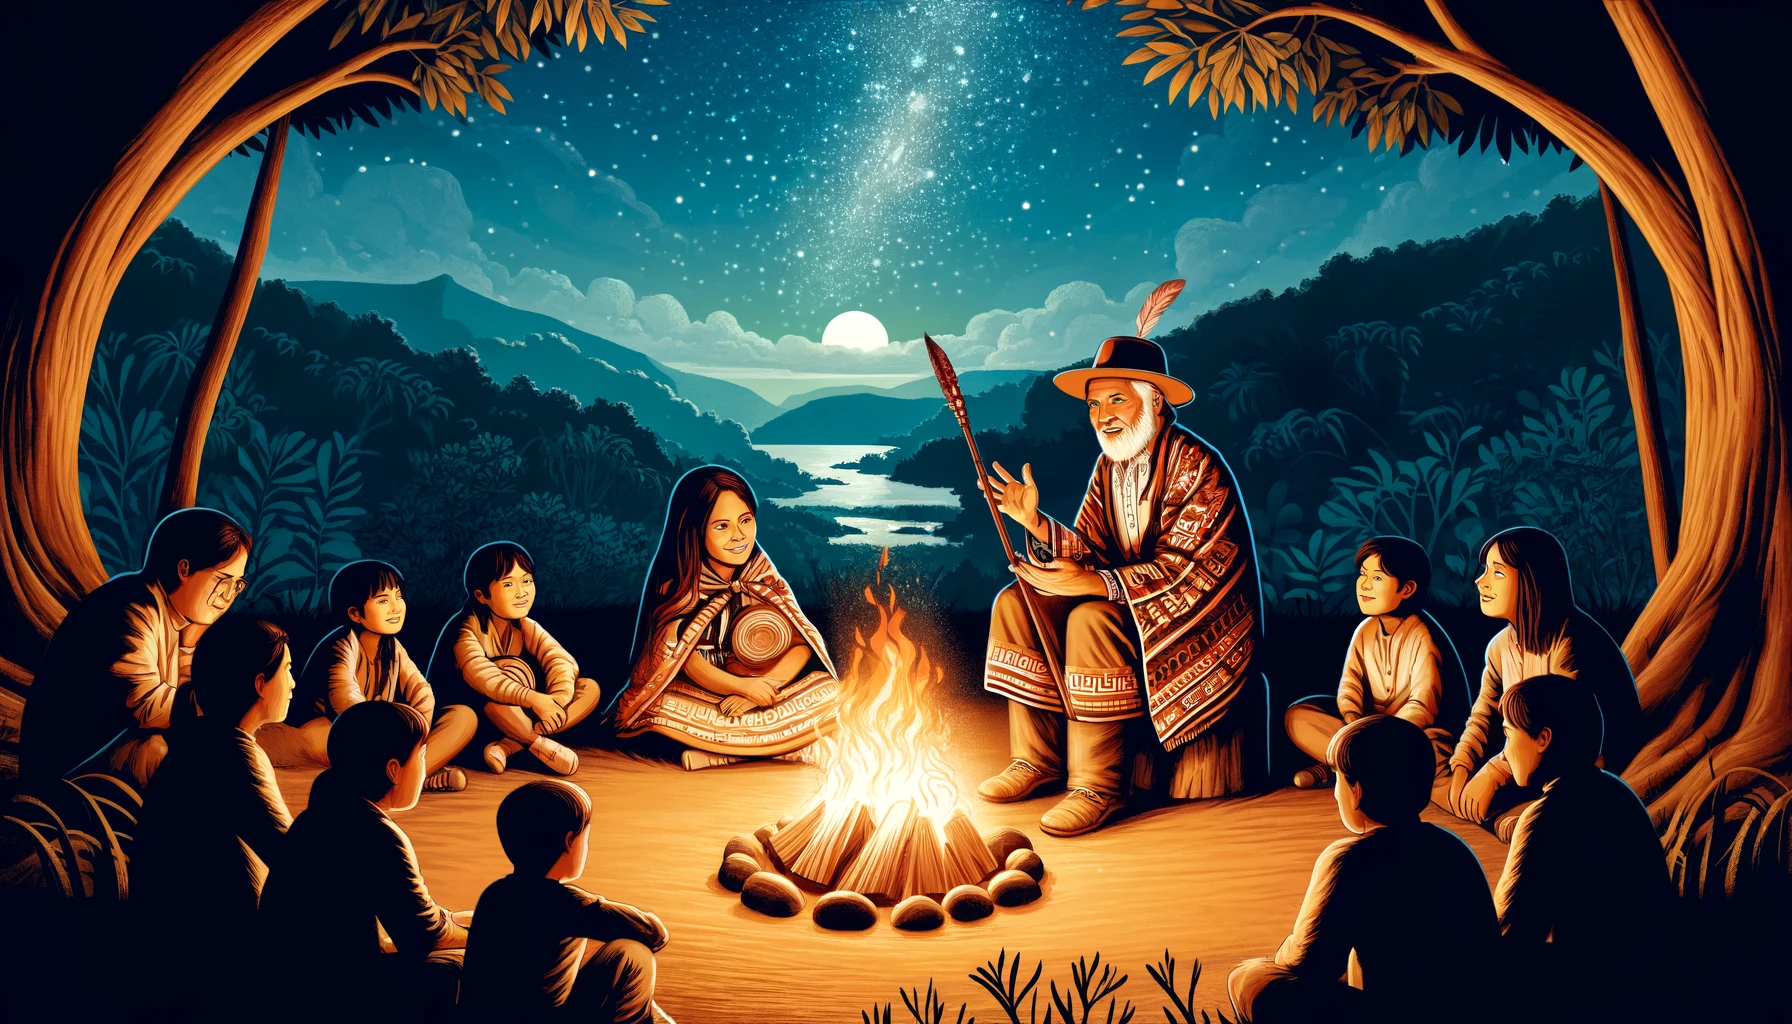 Ilustración de ancianos guaraníes contando mitos y leyendas a los jóvenes alrededor de una fogata nocturna, con un fondo de cielo estrellado y bosque.